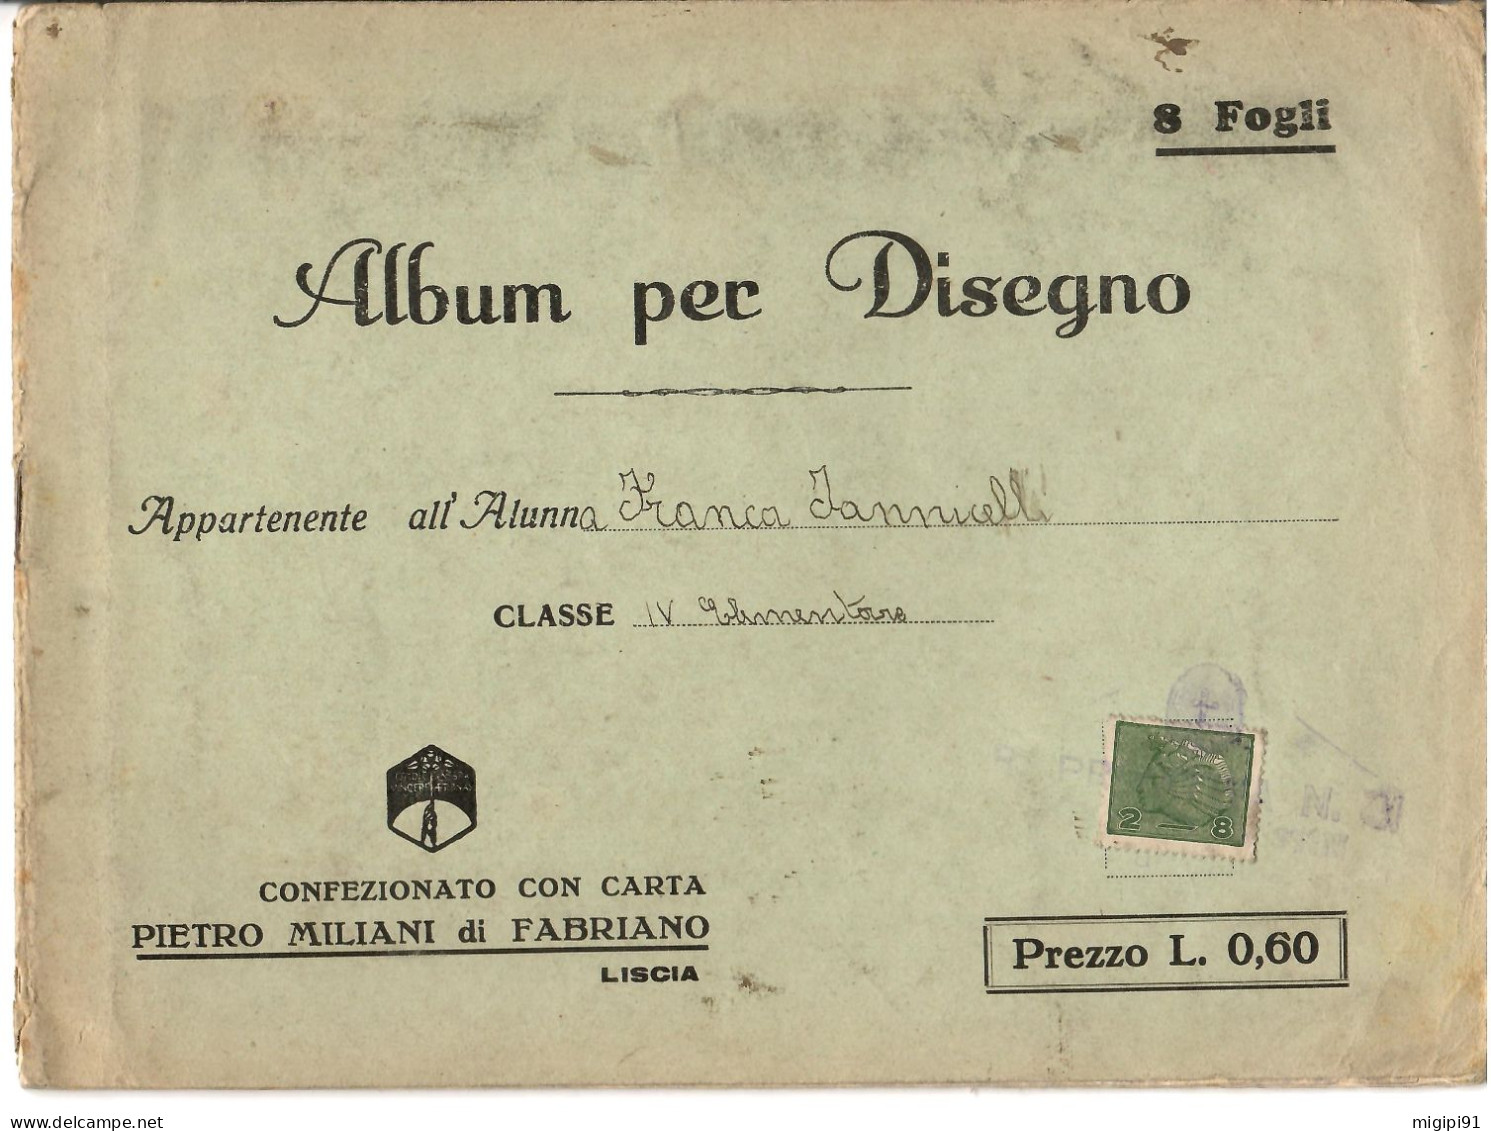 § Album Per Disegno Con Carta PIETRO MILANI Di FABRIANO-COOPERATIVA DI PRODUZIONE E LAVORO FRA CIECHI DI GUERRA§ § - War 1914-18